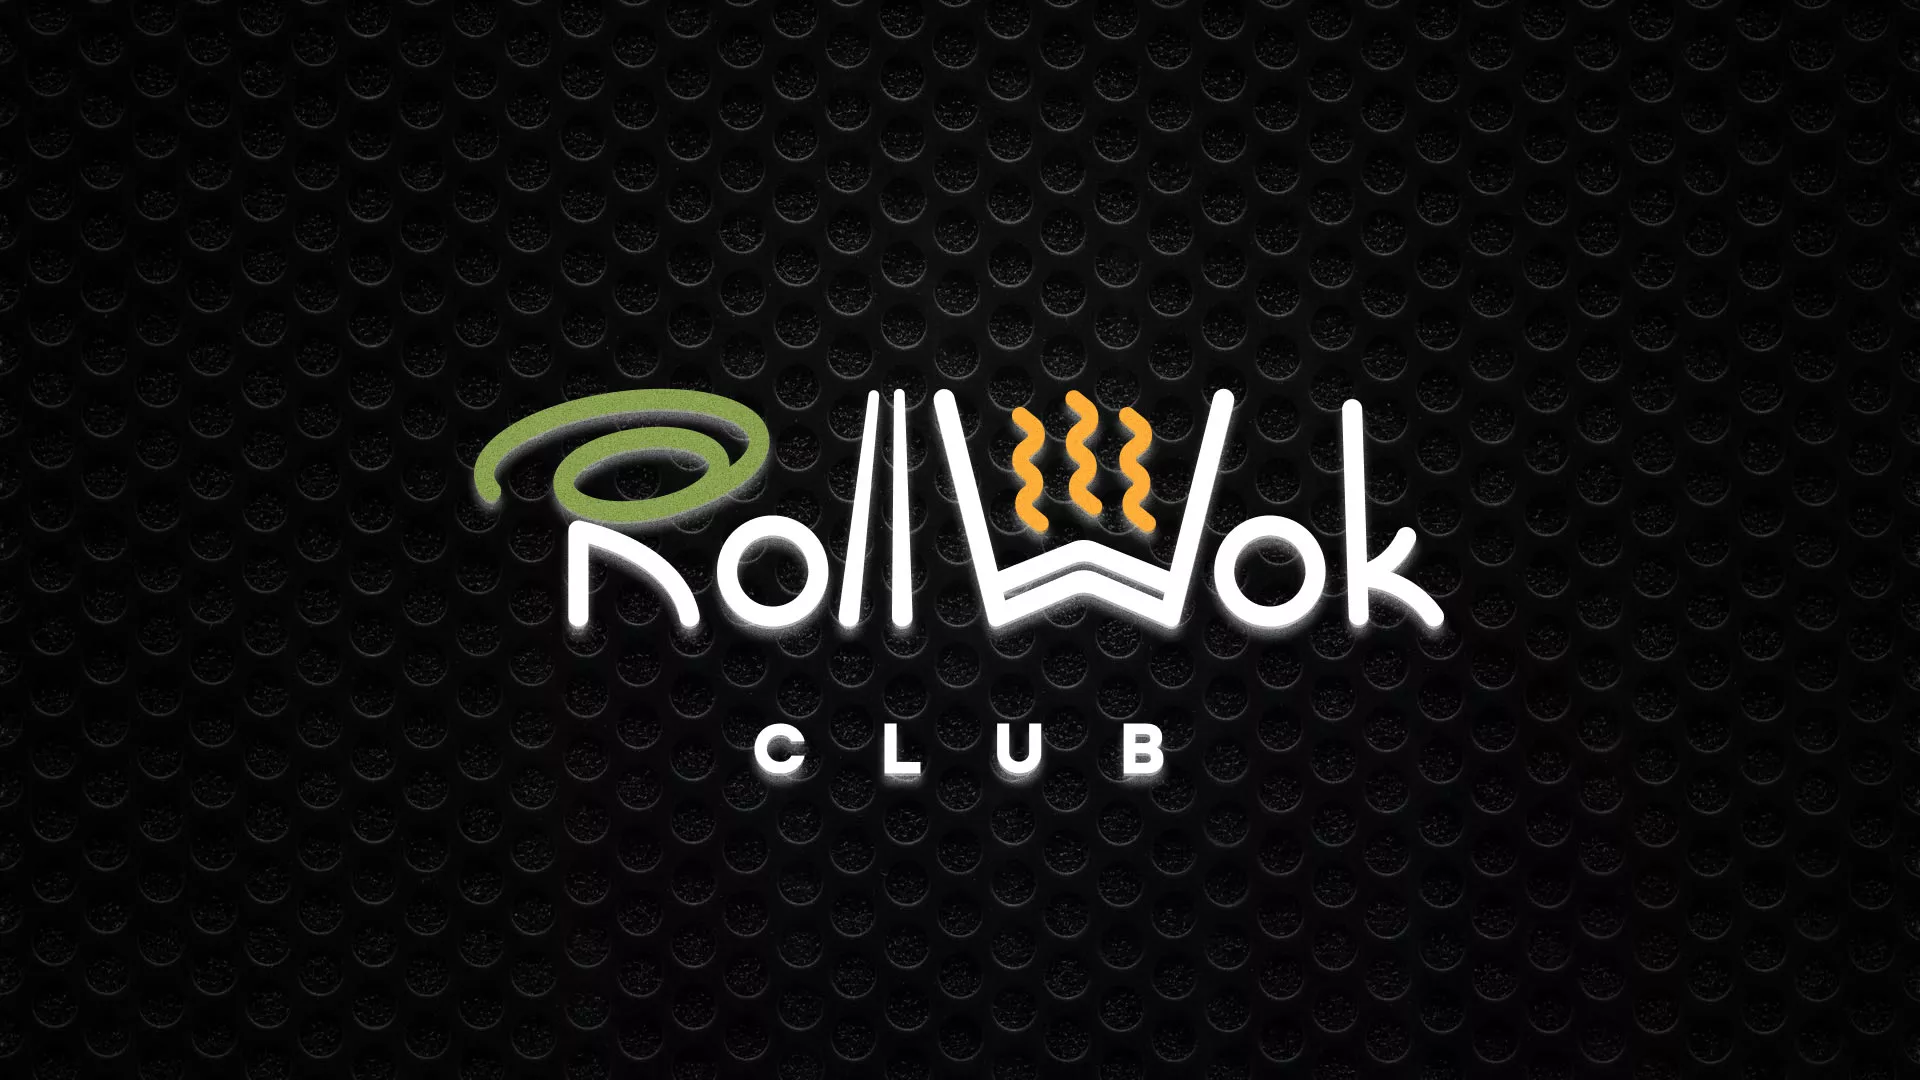 Брендирование торговых точек суши-бара «Roll Wok Club» в Гаджиево